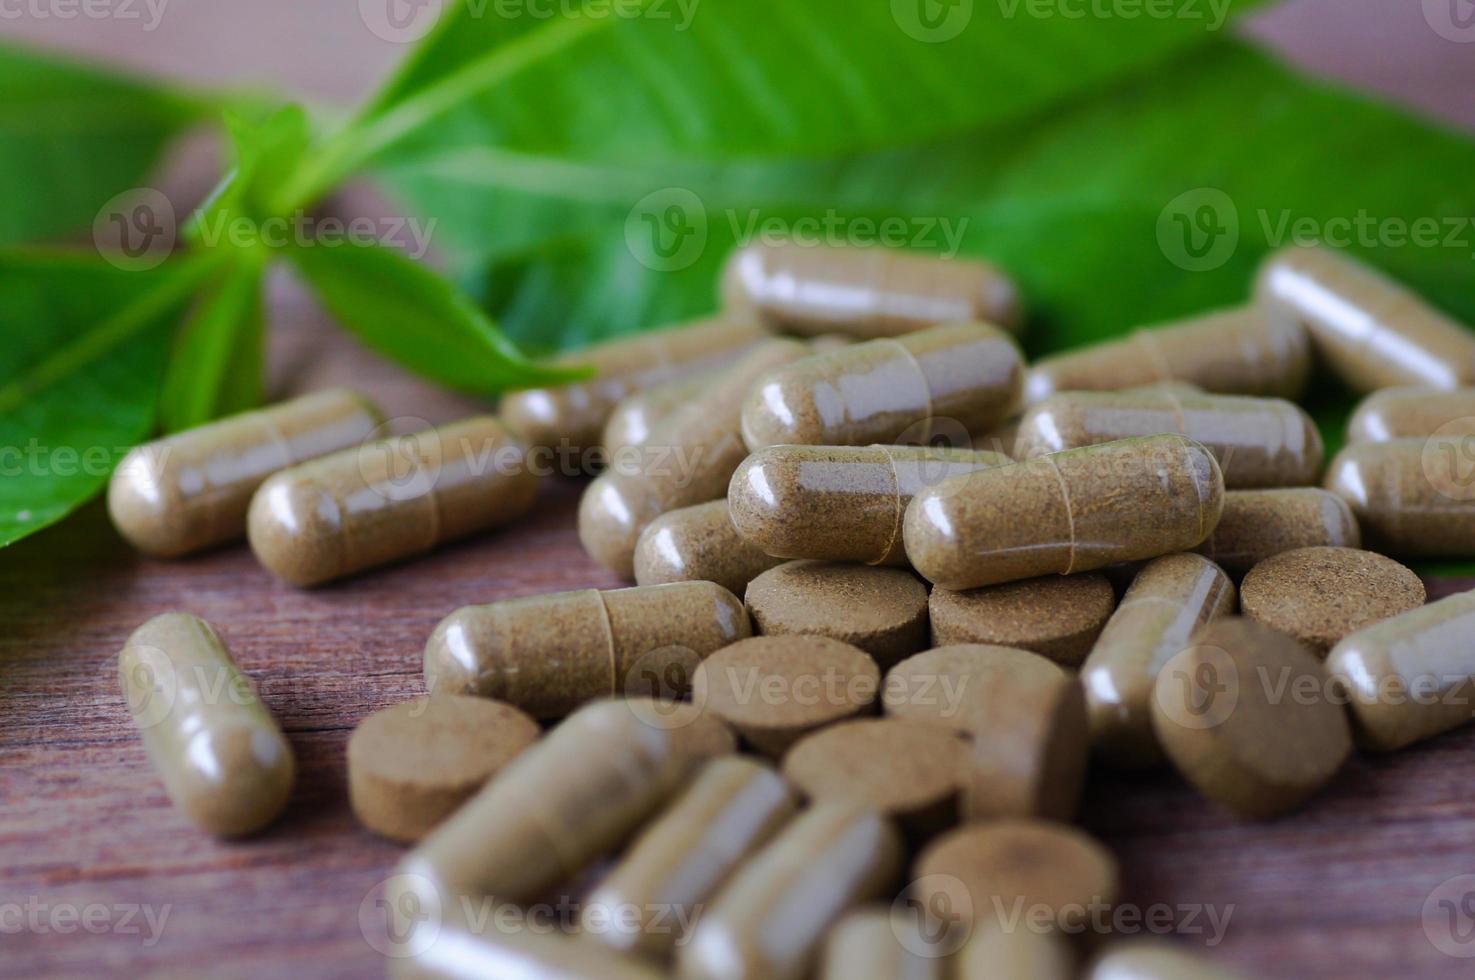 médicament à base de plantes en capsule de pilule photo